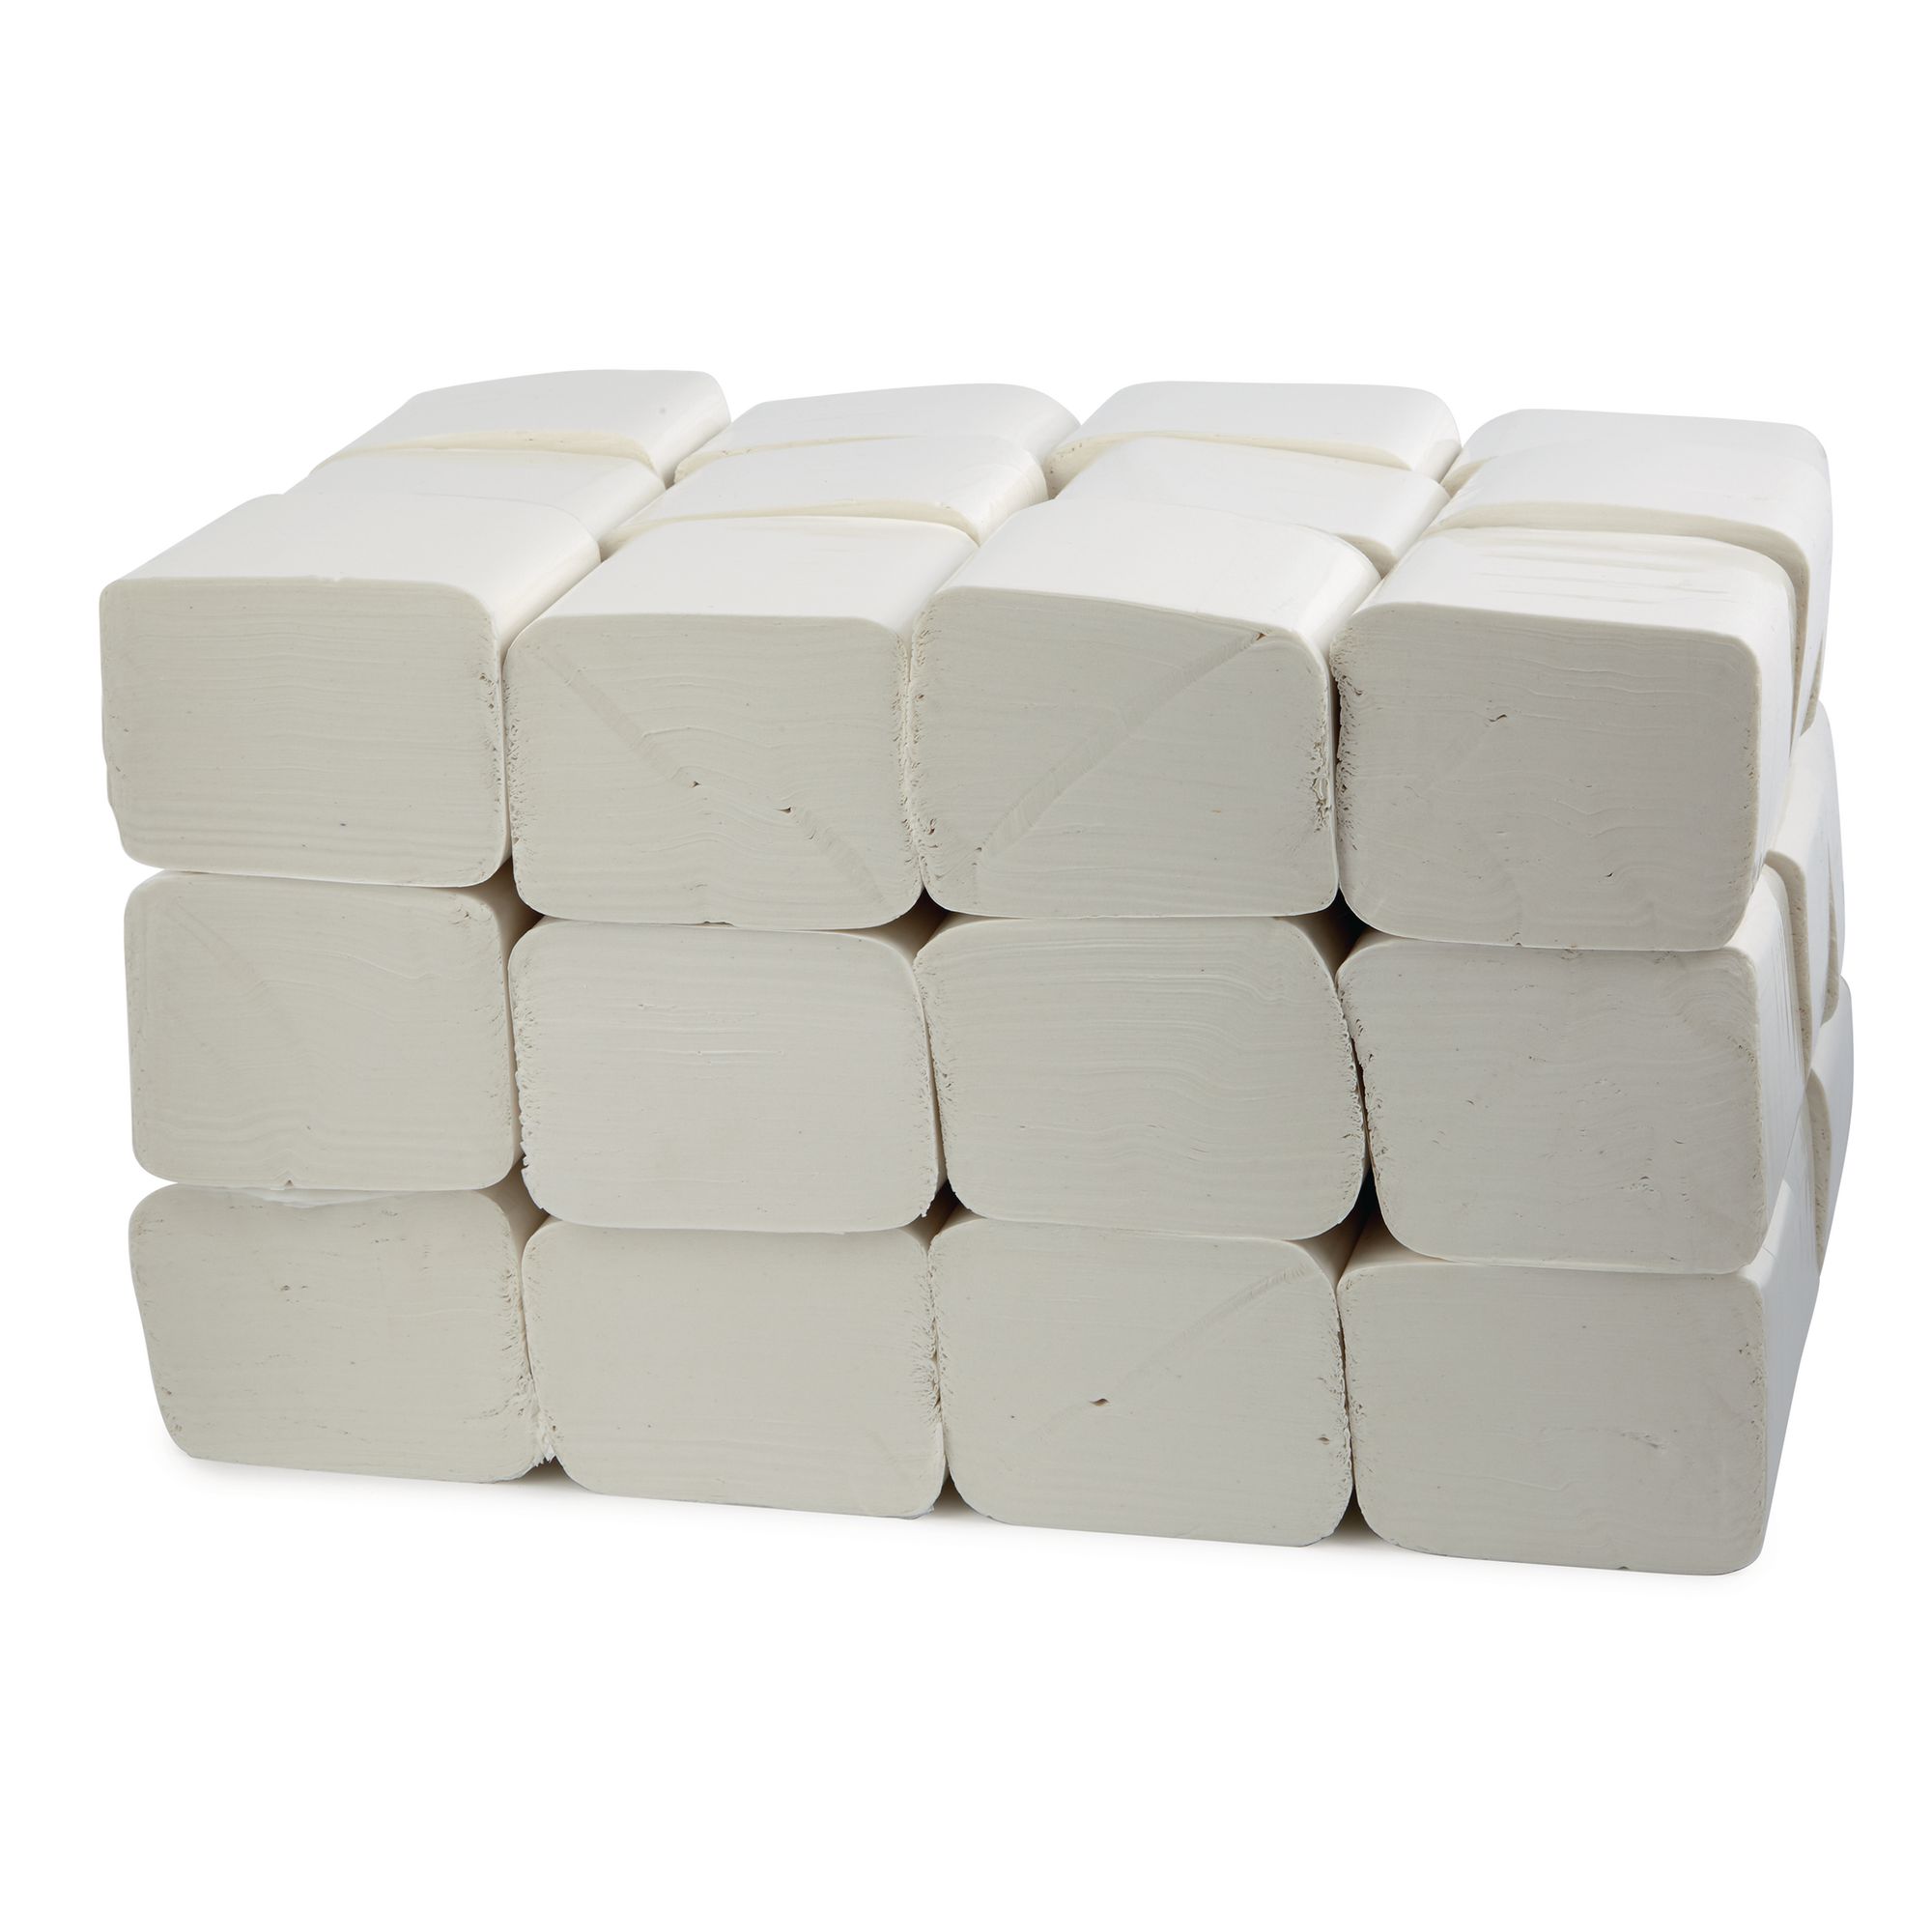 Bulk Toilet Roll Suppliers  Wholesale Toilet Paper Manufacturer